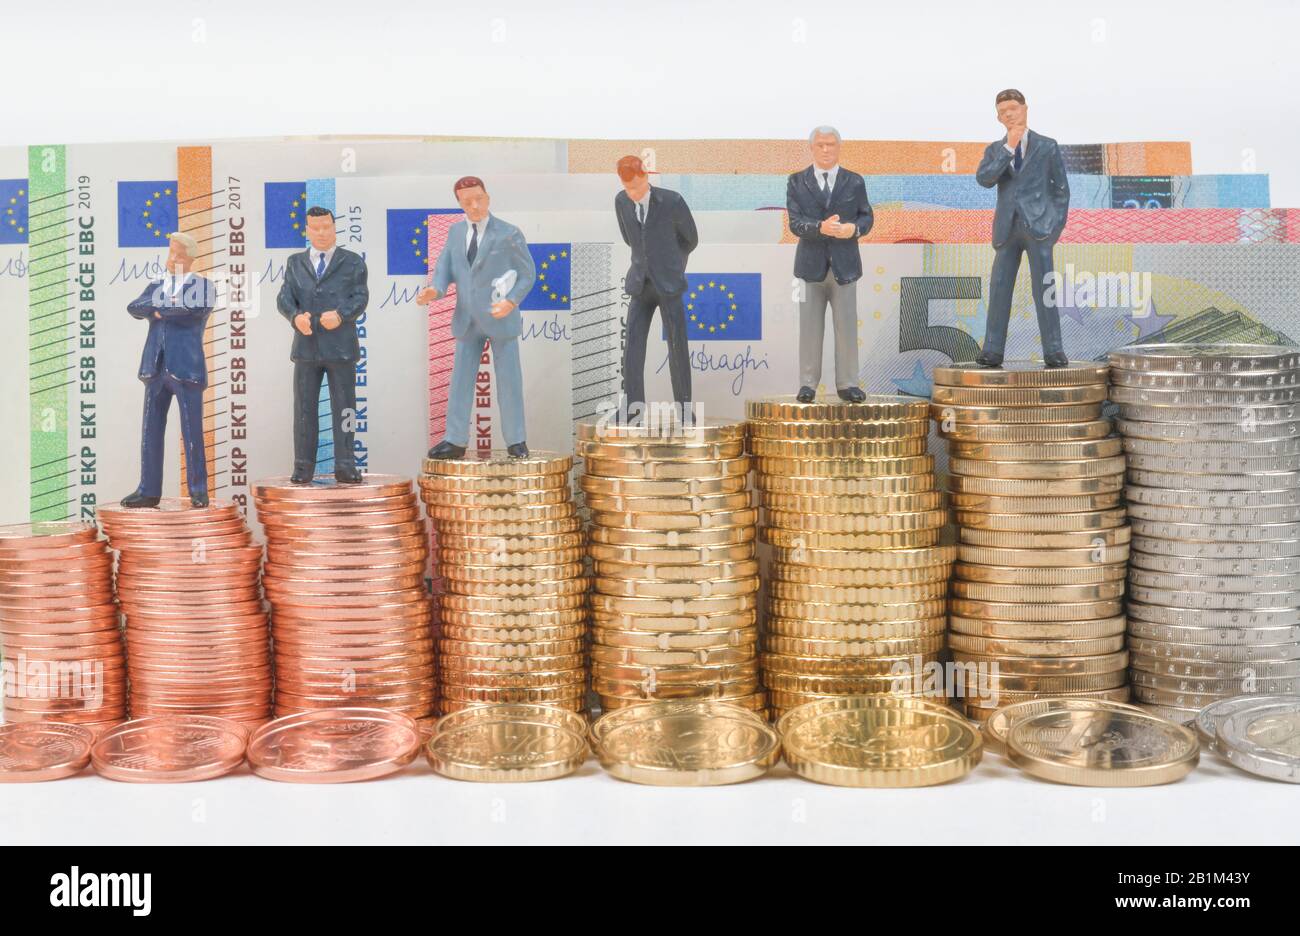 Stapel Münzgeld, Centmünzen, Euromünzen, Miniaturfiguren, Symbolfoto Manager Lohn Geschäftsmänner, Studiofoto Foto Stock